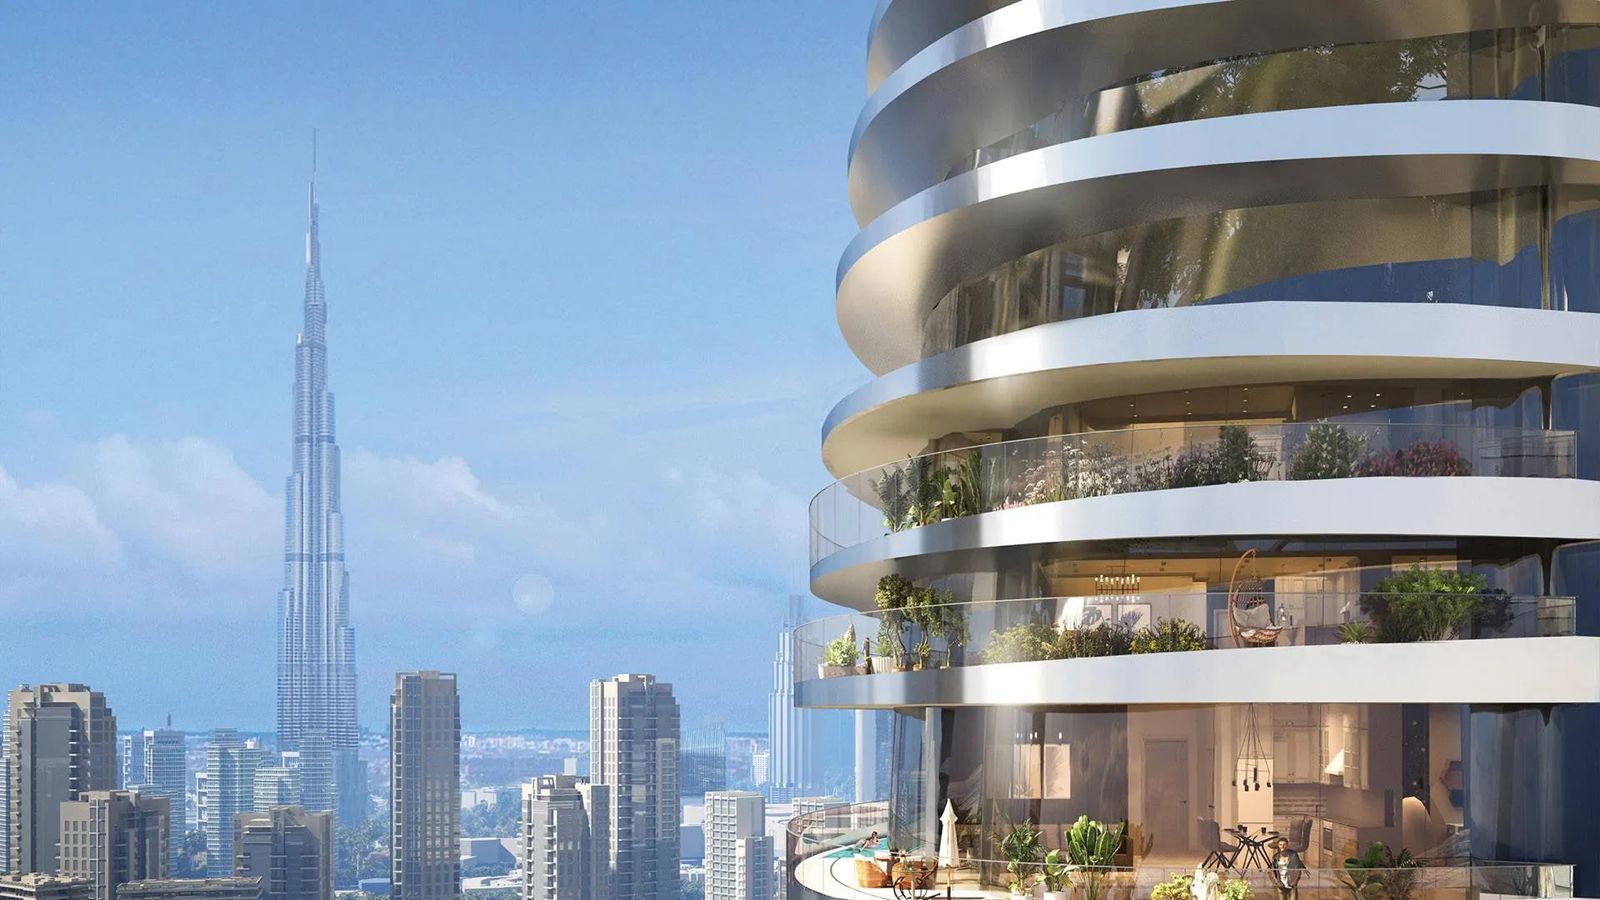 CANAL CROWN Prix Direct Promoteur pour ces appartements et penthouses de luxe à DUBAI by DAMAC associé à de GRISOGONO et JINVESTY immobilier